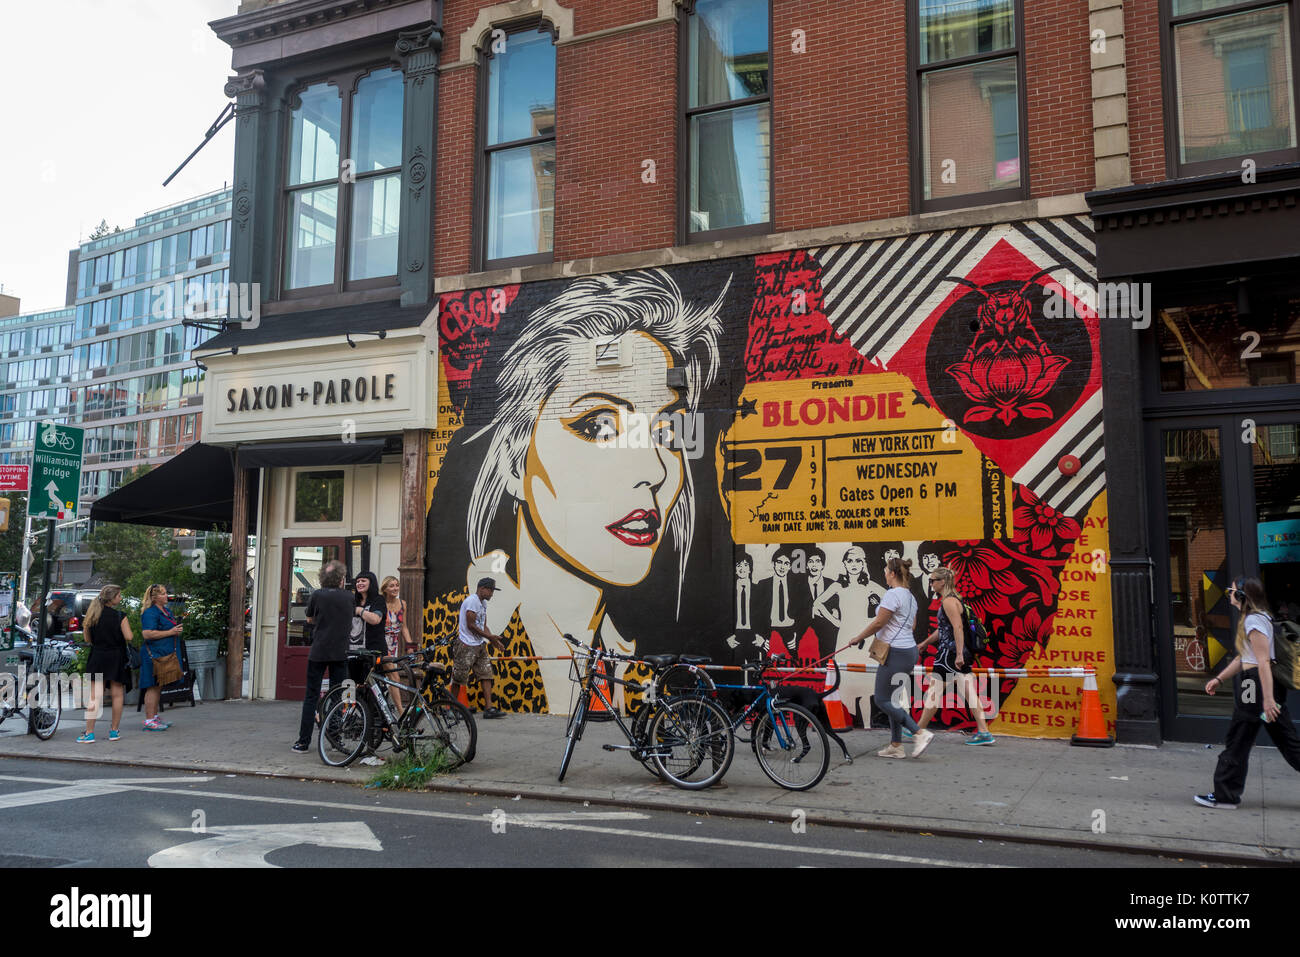 New York, USA. Août 23, 2017. Les passants s'arrêter pour admirer une peinture murale, nouvellement achevée par Shepard Fairey, dans l'East Village. La murale dispose de Debbie Harry, chanteur pour le groupe rock Blondie, ont débuté leur carrière en 1979 au CBGB'S qui était situé en face de la rue. Le travail de la fée est aussi présenté dans le dernier album de Blondie "Polinator" qui a été publié en mai 2017 Crédit : Stacy Walsh Rosenstock/Alamy Live News Banque D'Images